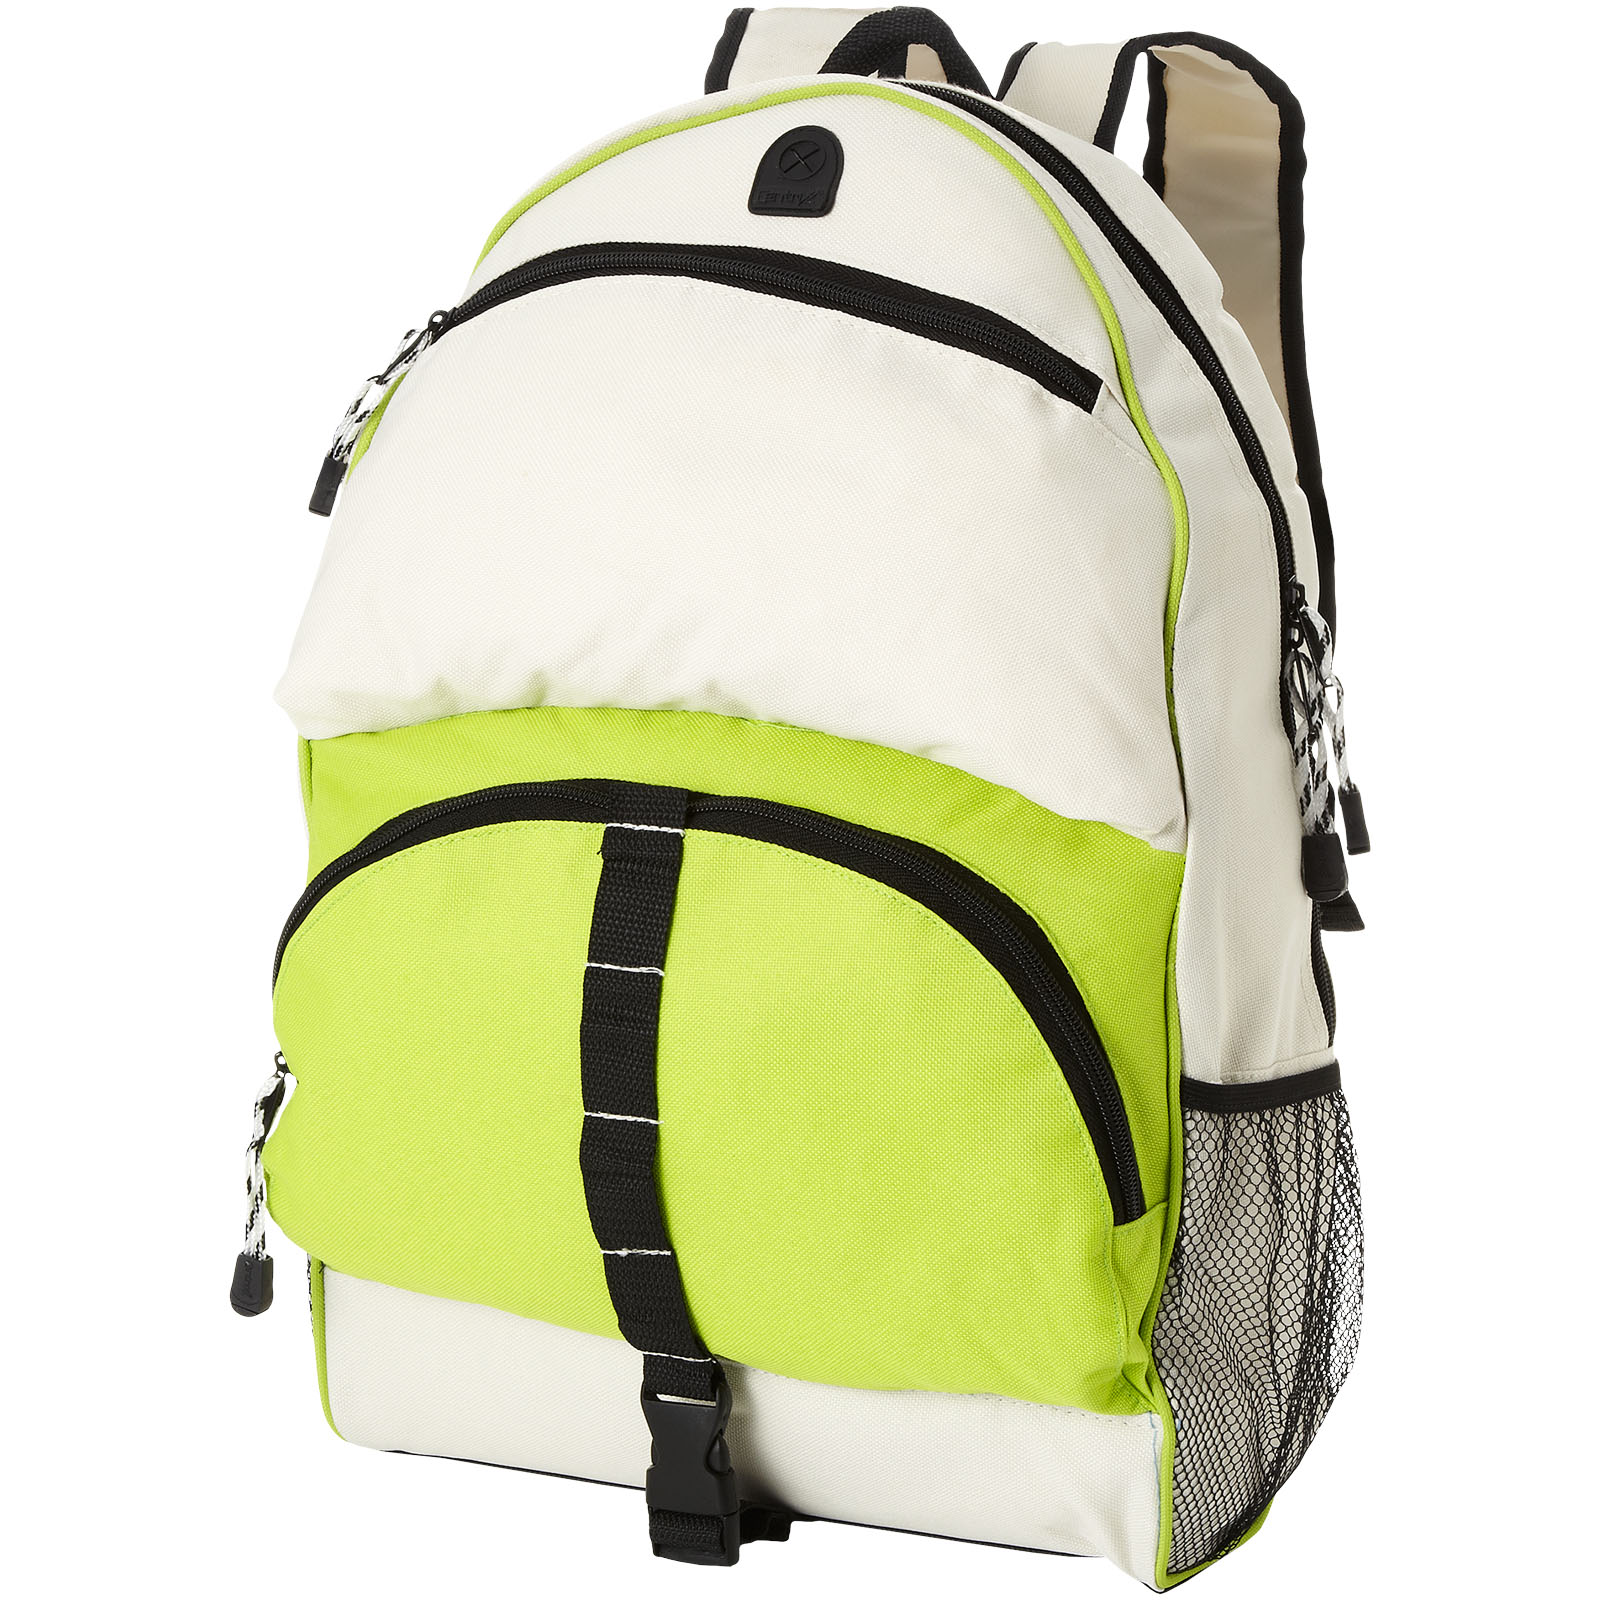 Bags - Utah backpack 23L